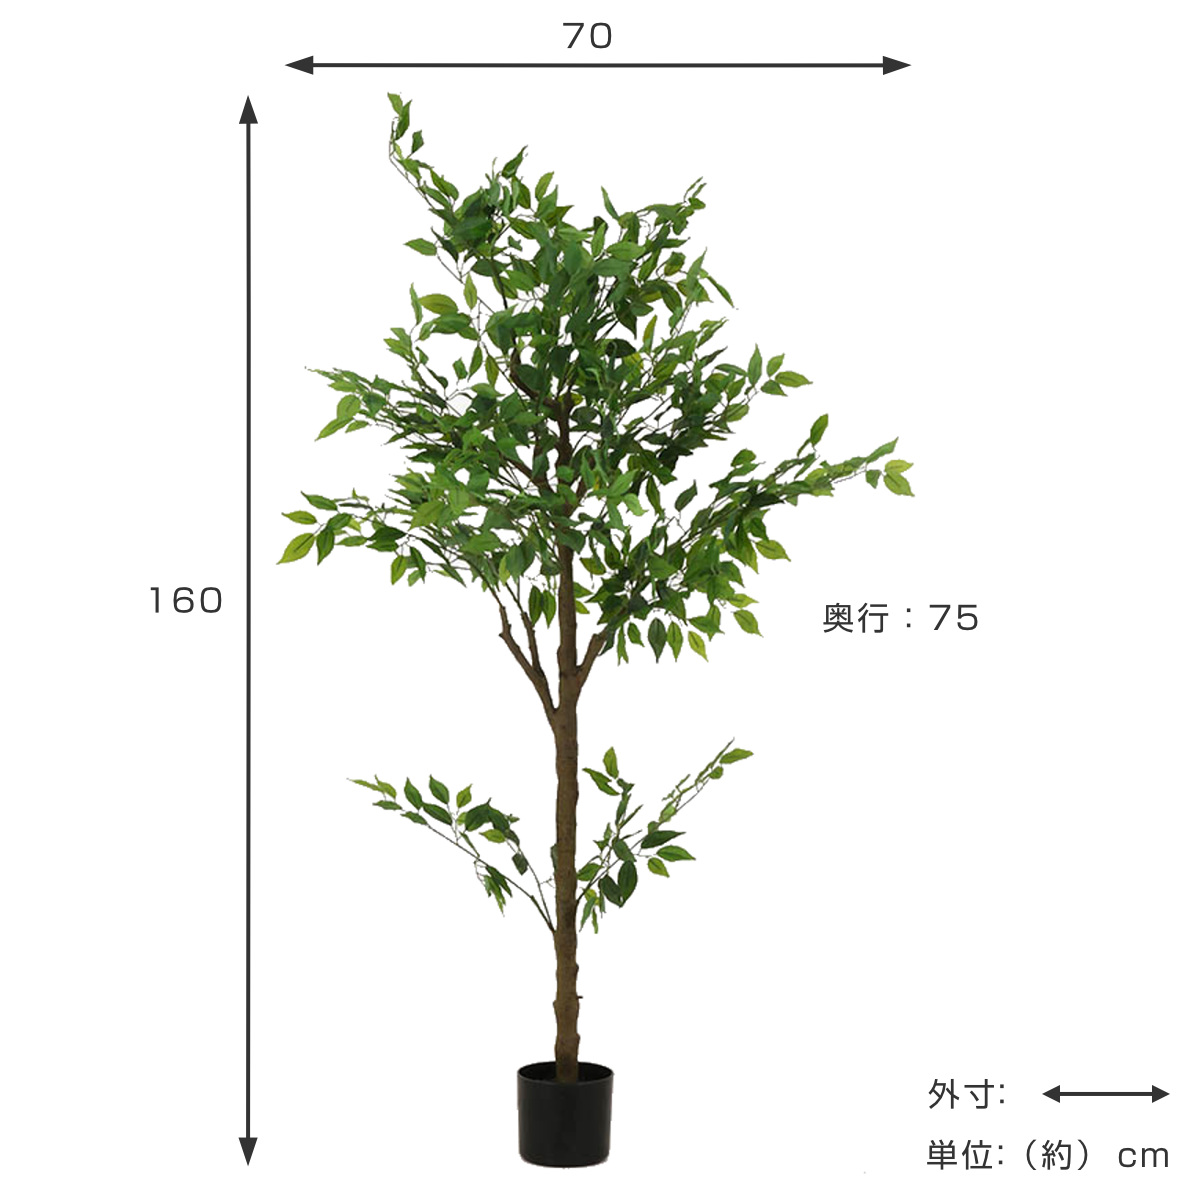 【数量限定】Nearly Natural フィカス 人工観葉植物 1.8m 【日